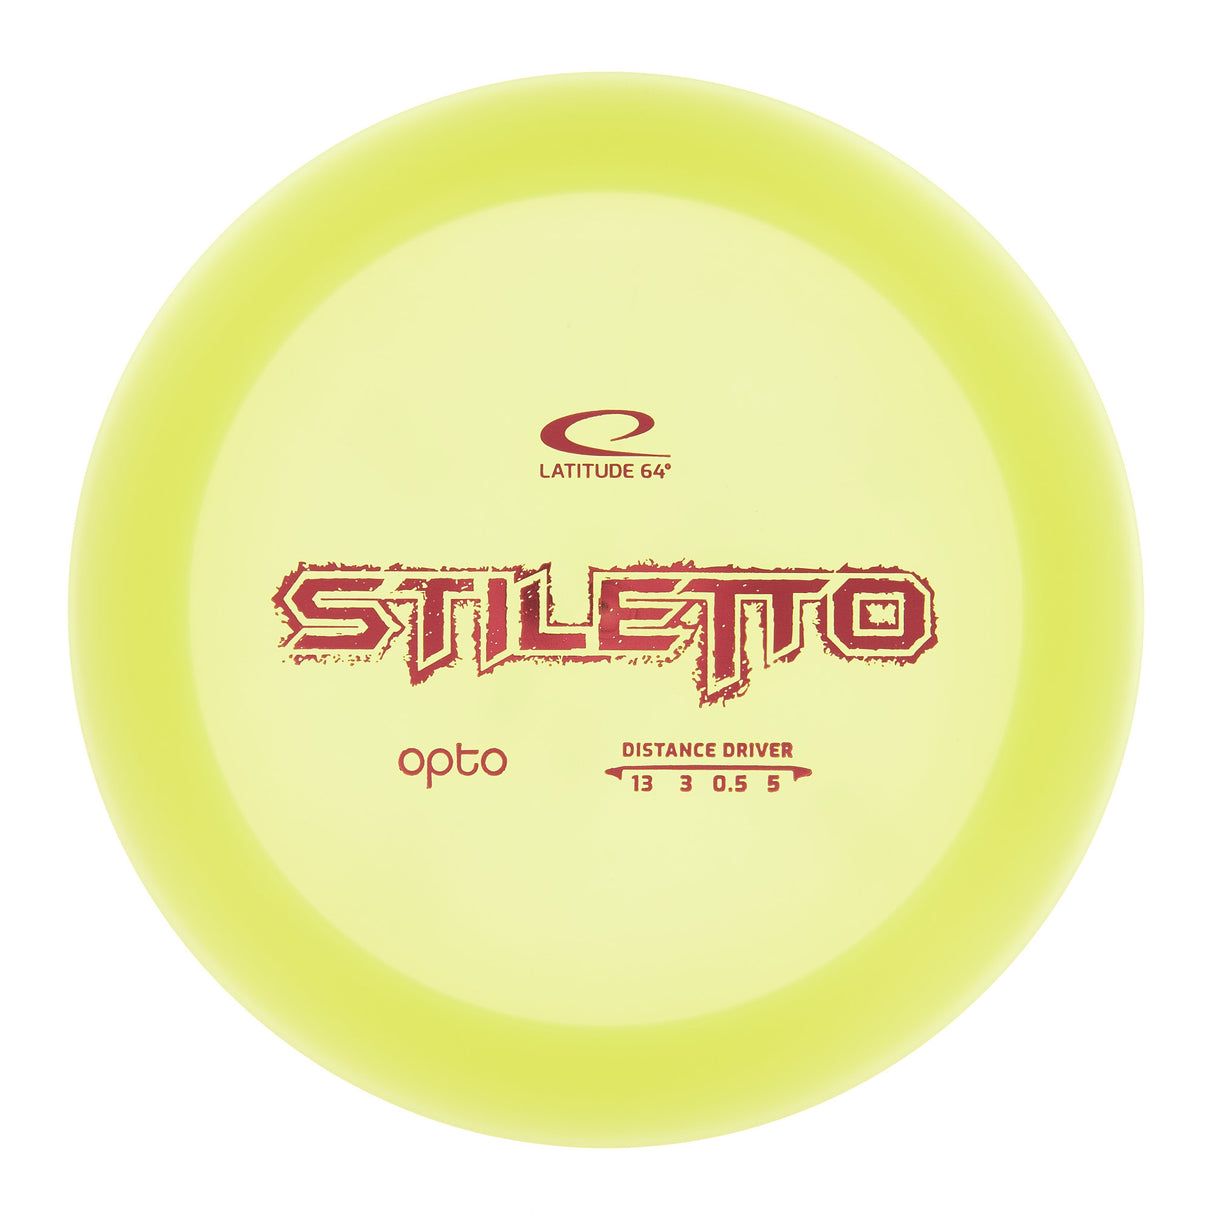 Latitude 64 Stiletto - Opto 176g | Style 0002